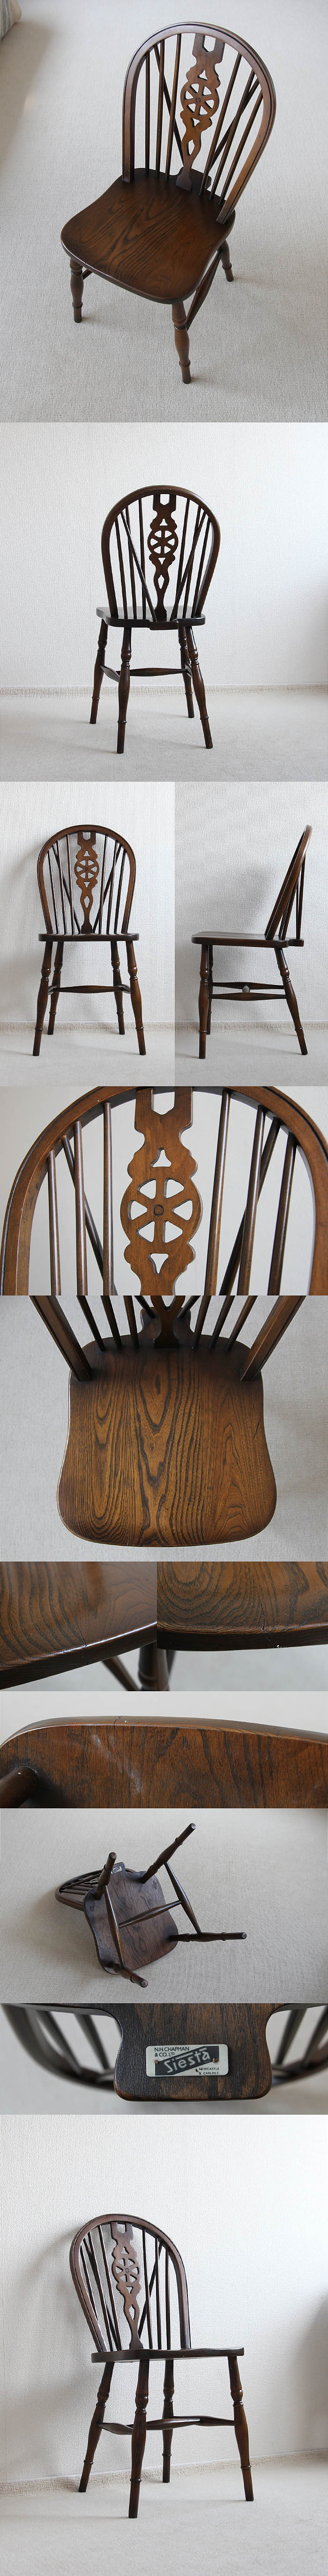 イギリス アンティーク調 ホイールバックチェア 木製椅子 家具【車輪モチーフが素敵なキッチンチェア」P-079